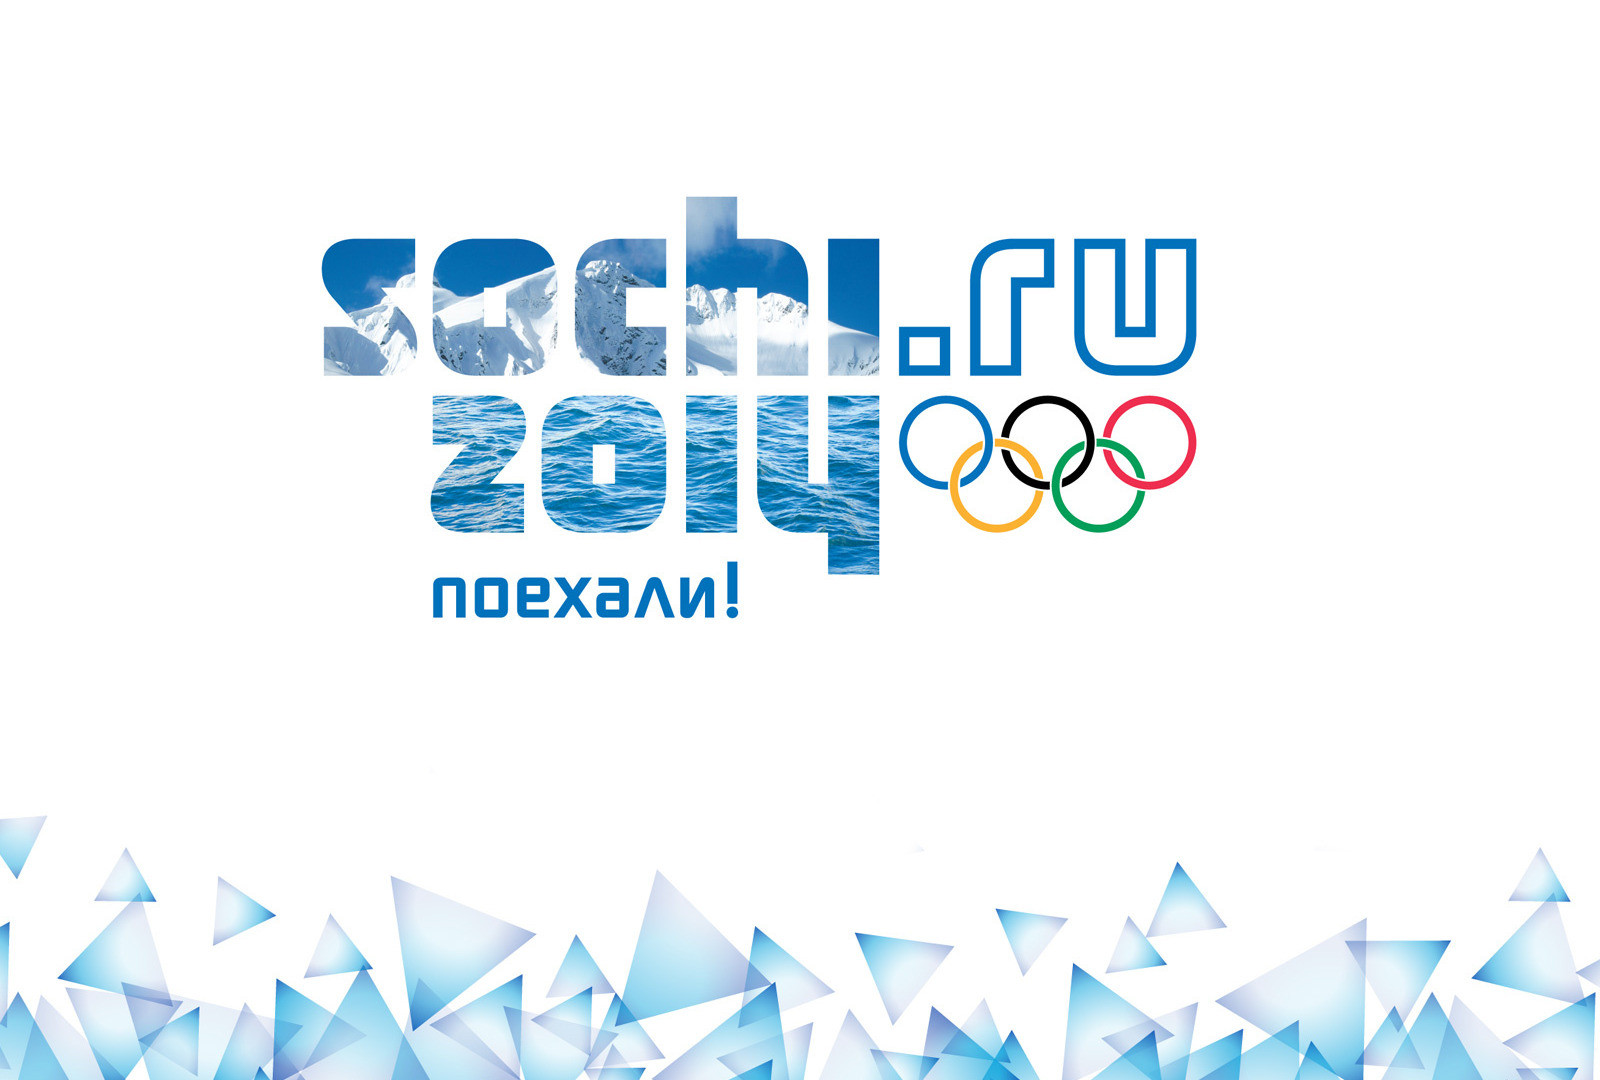 Сериал Сочи 2014: 22-е Зимние Олимпийские игры 